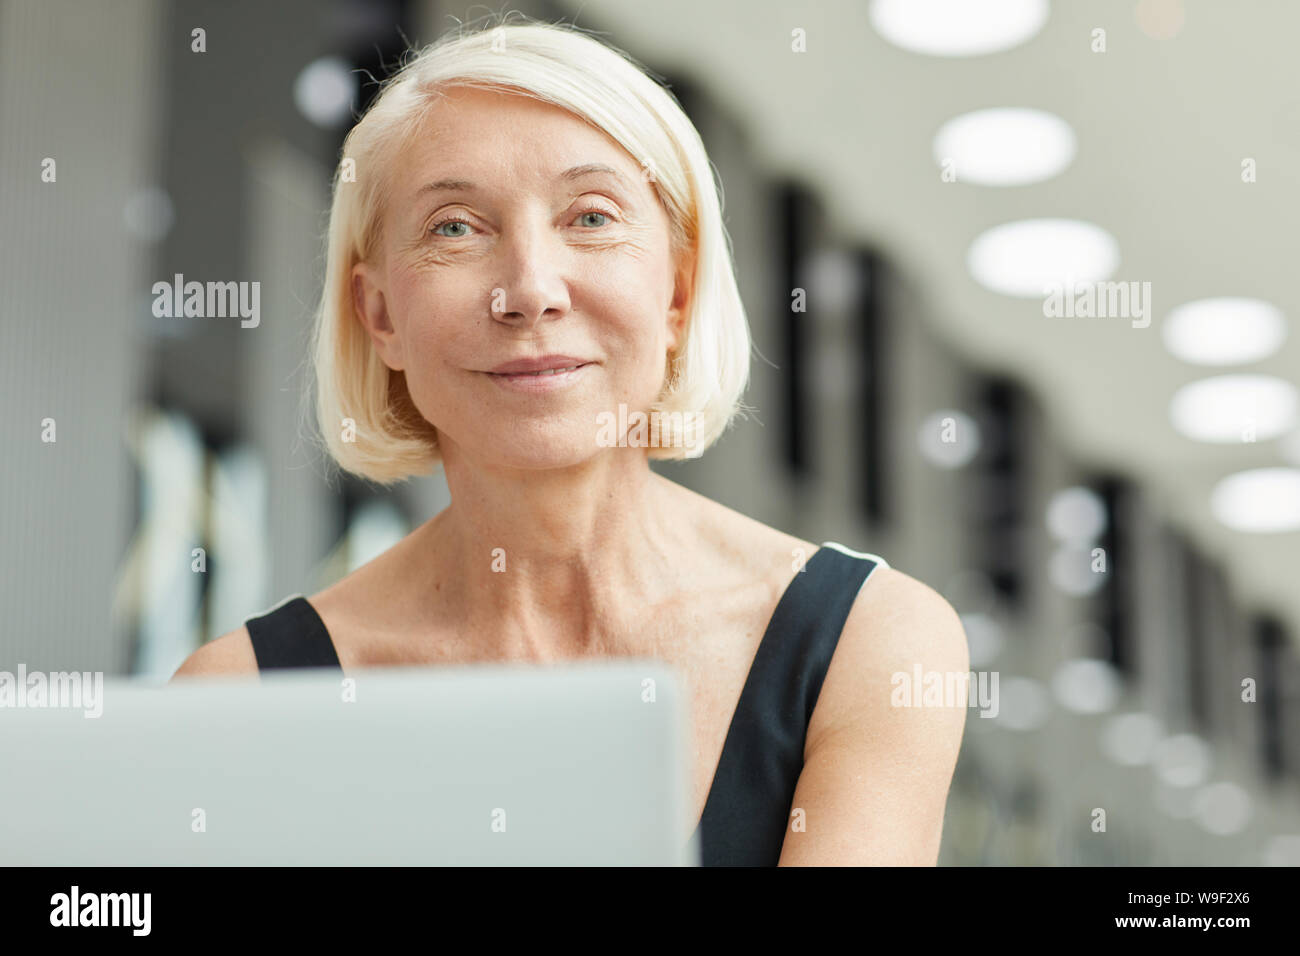 Portrait de femme mature avec de courts cheveux blonds looking at camera while working on laptop computer at office Banque D'Images